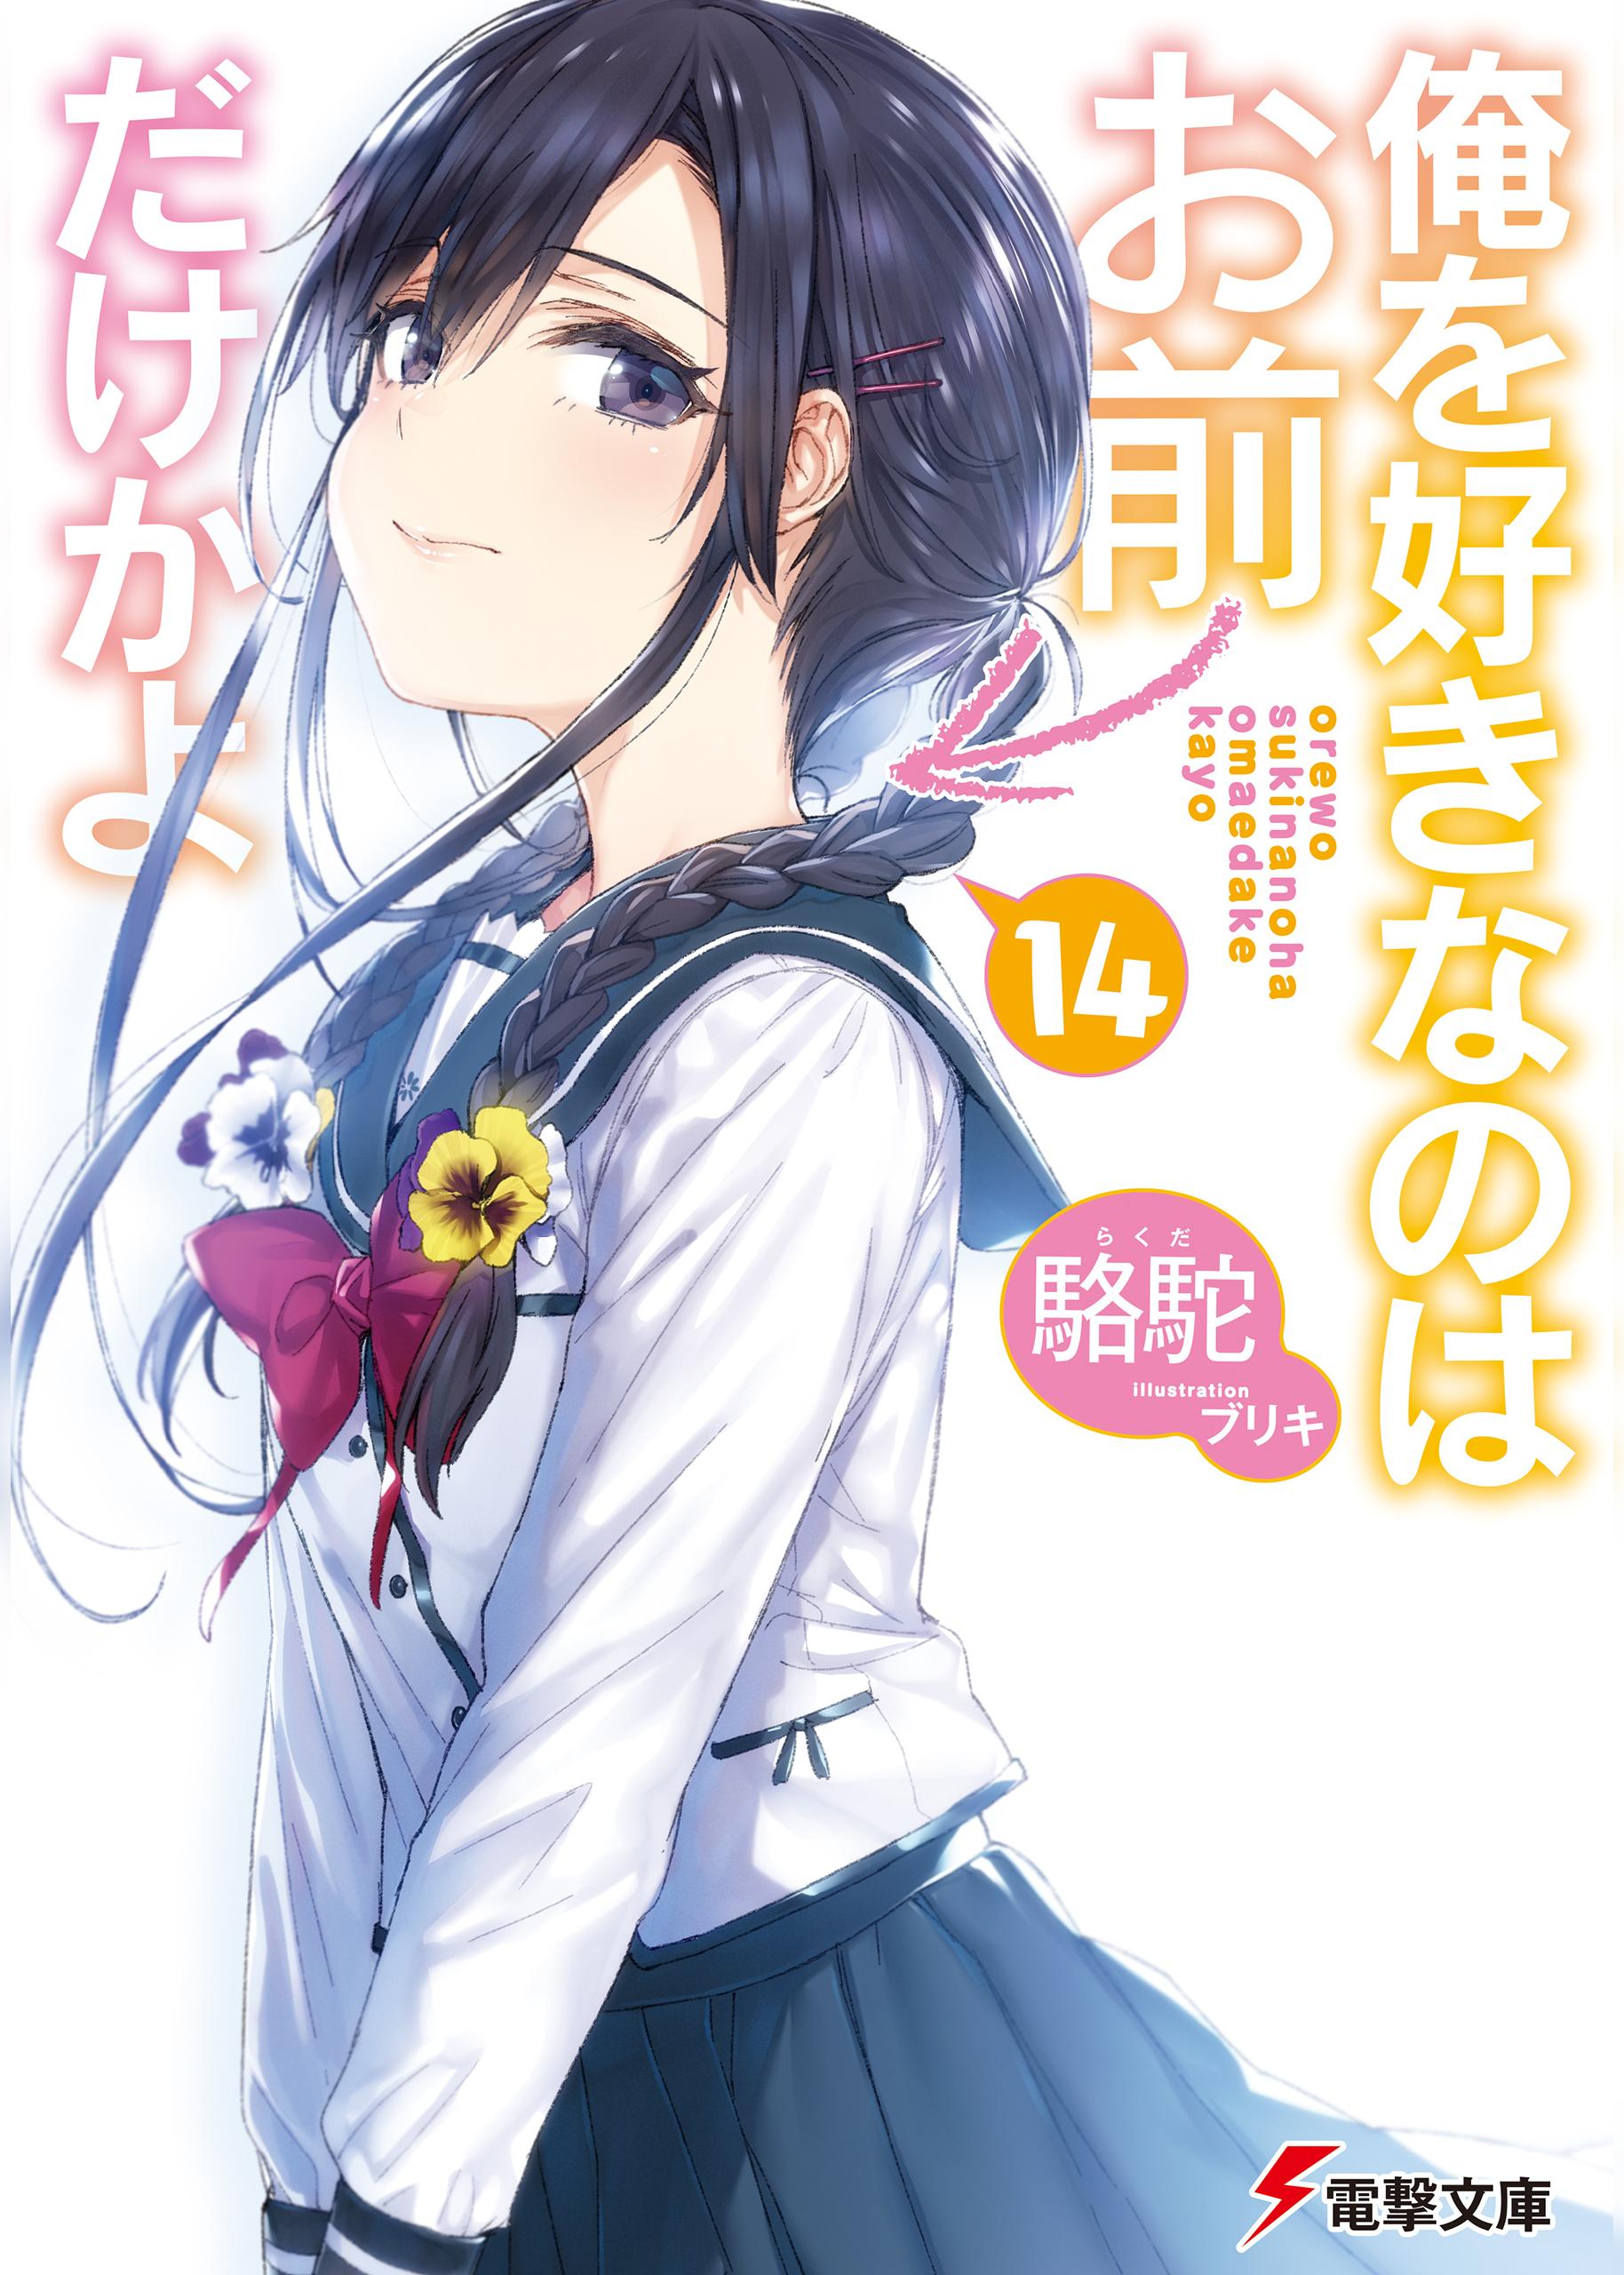 Ore wo Suki Nano wa Omae Dake ka yo” Light Novels Get Anime TV